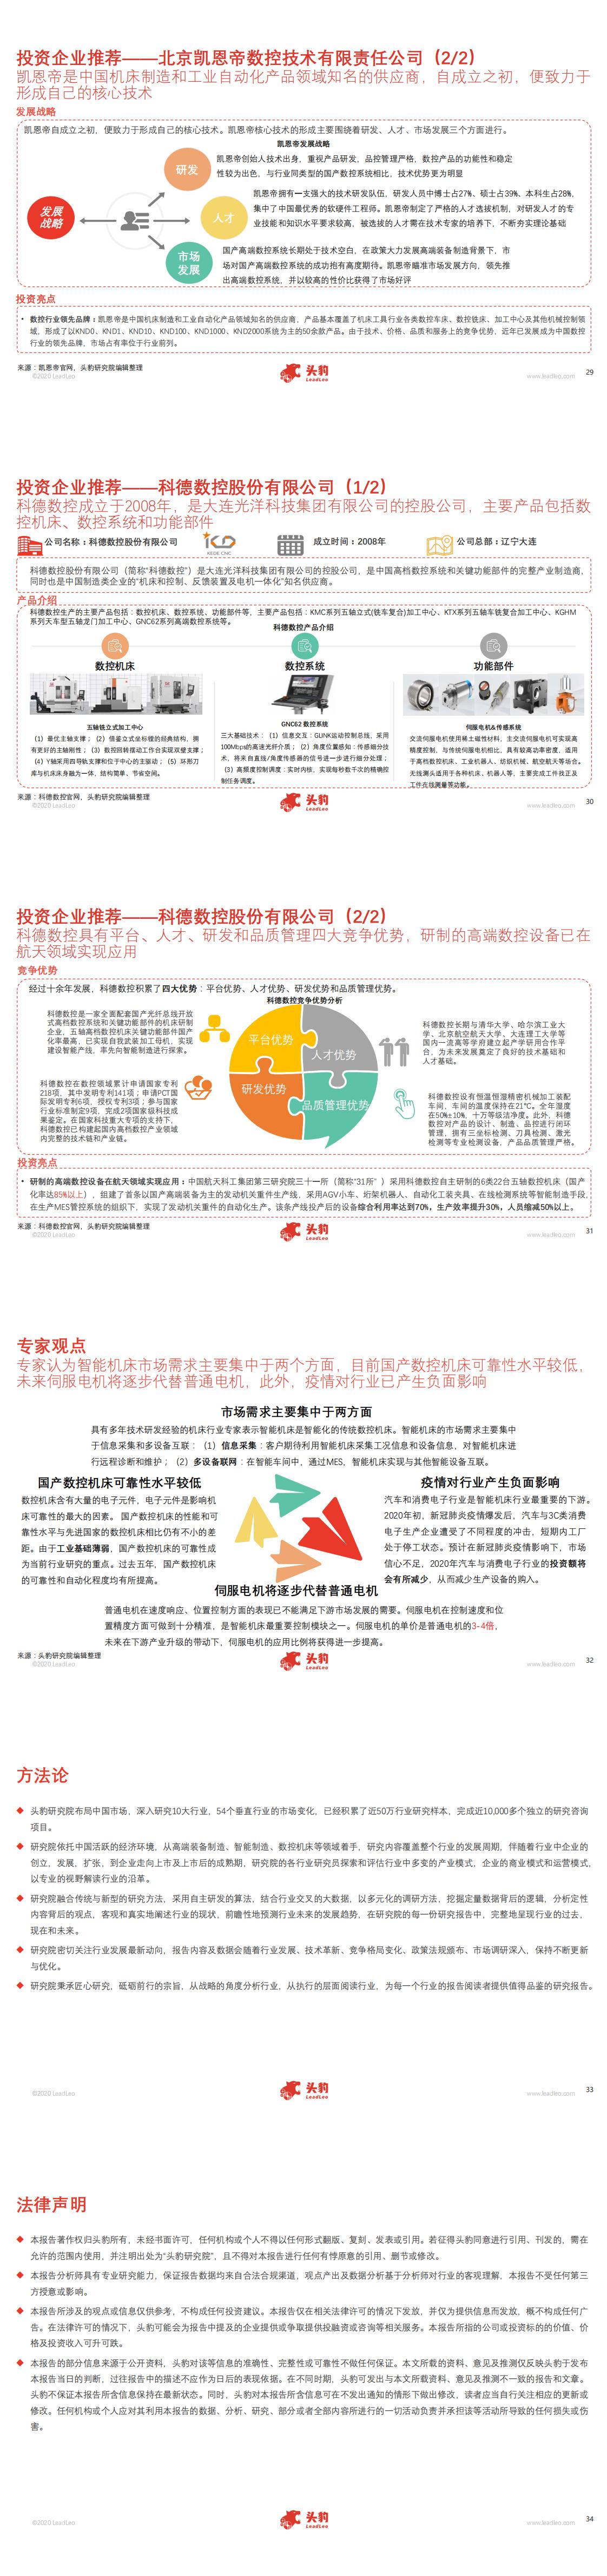 【头豹】2020年中国智能机床行业概览_1.jpg